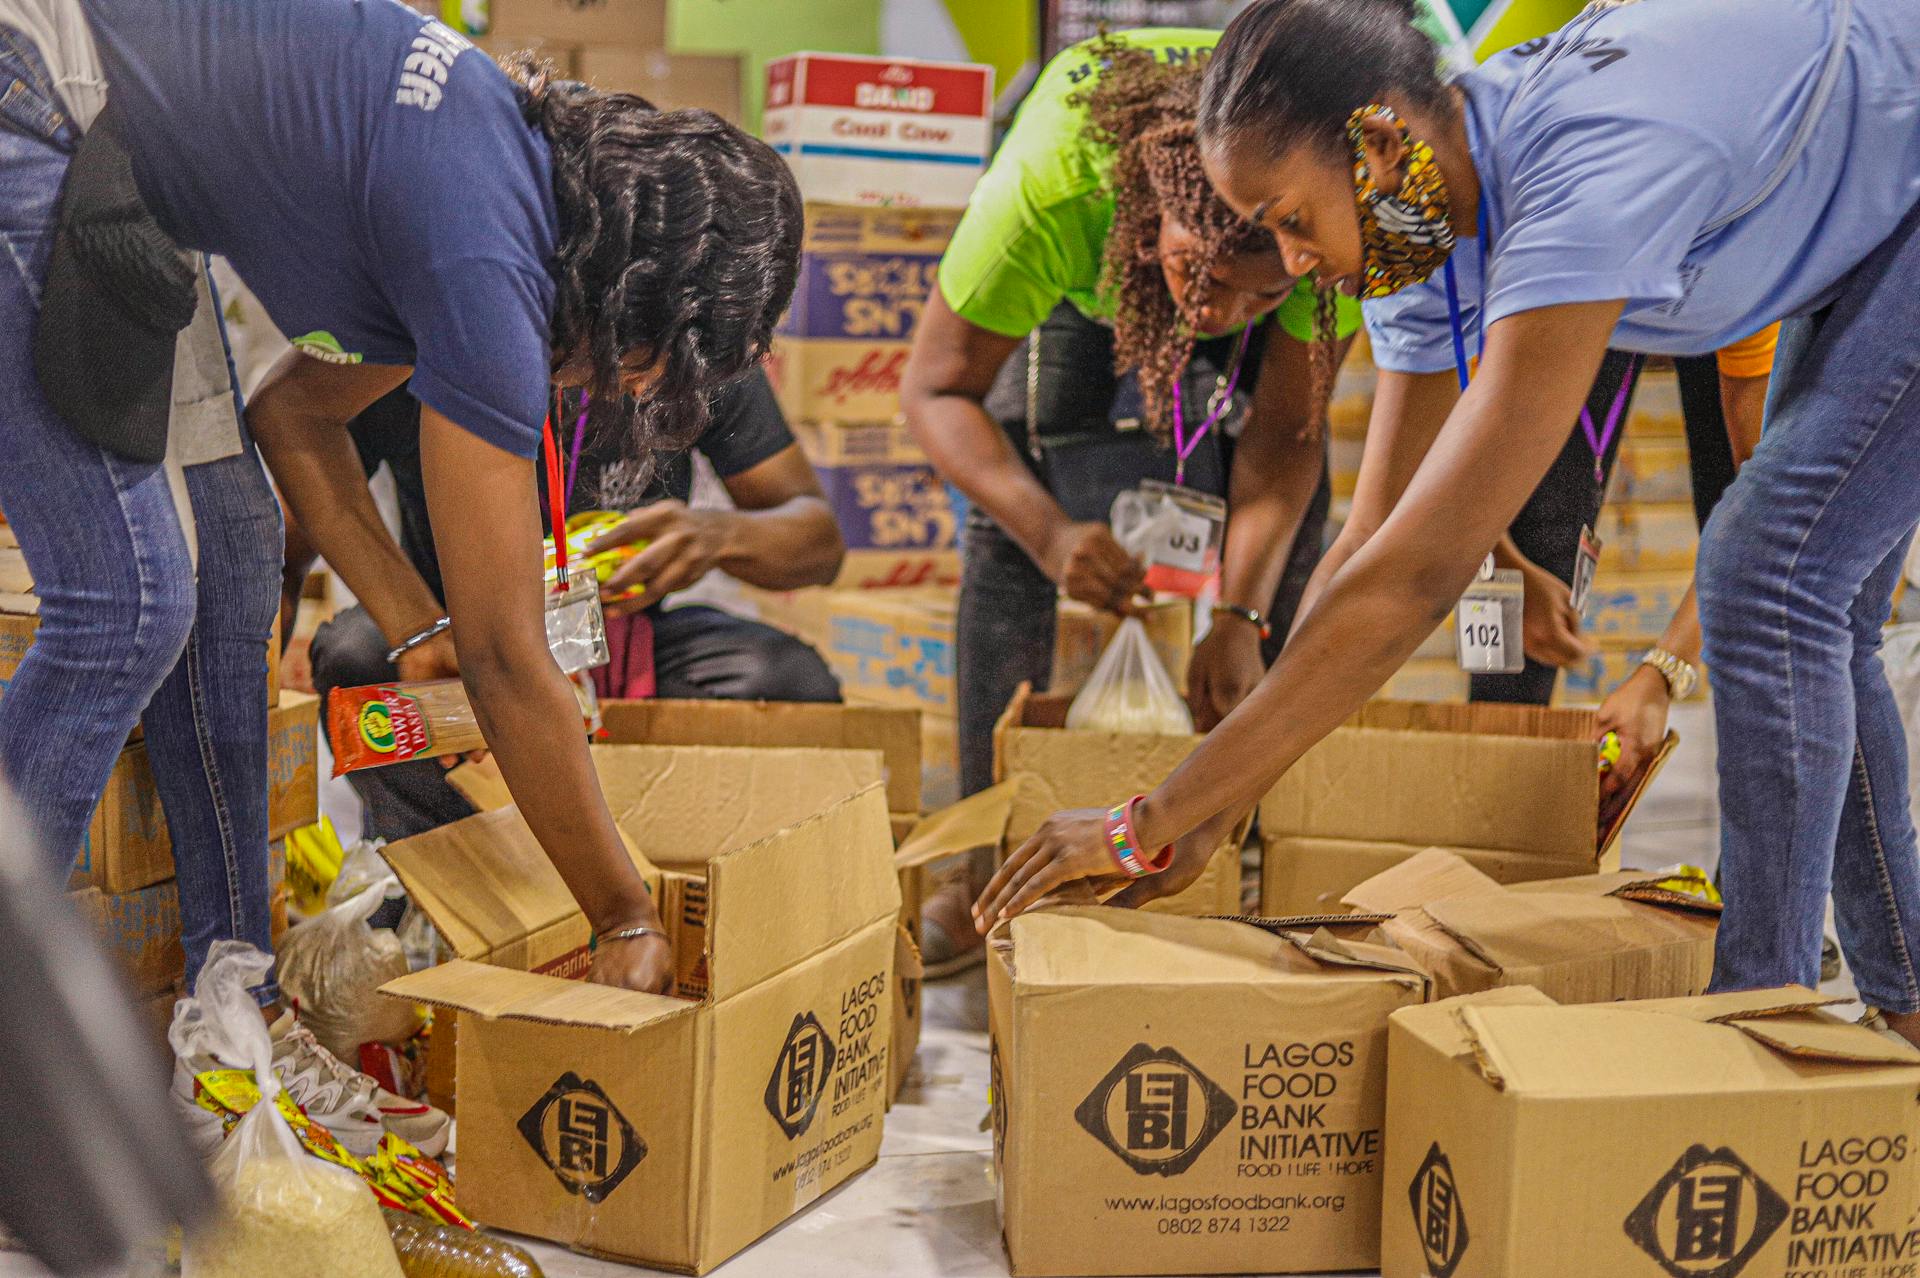 Des bénévoles d'une banque alimentaire emballent des articles dans des boîtes en carton | Source : Pexels